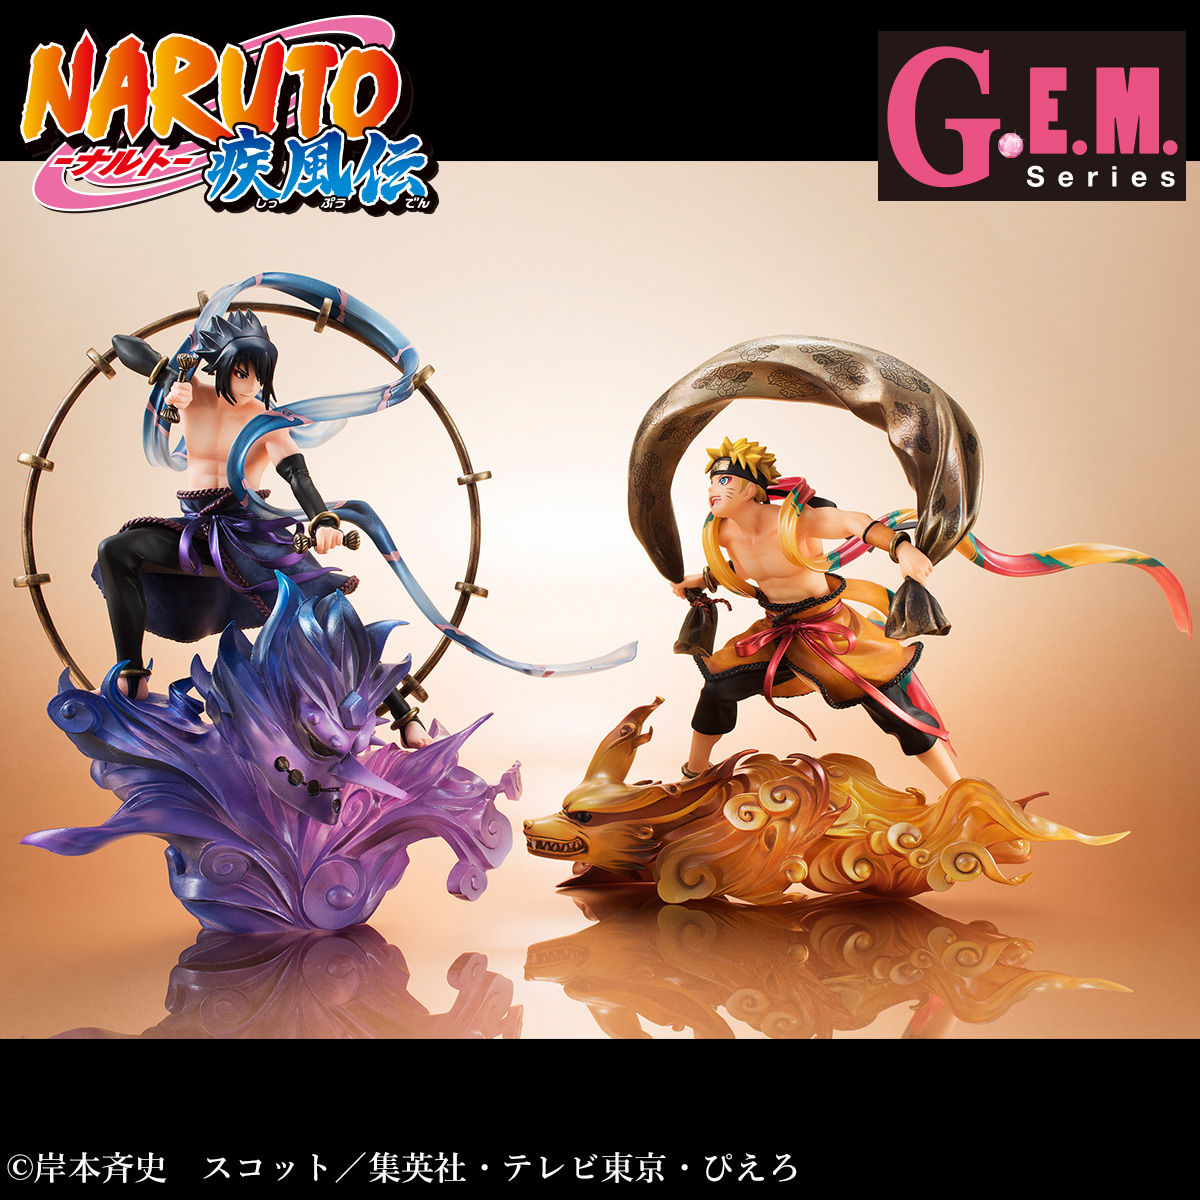 G.E.M.シリーズ remix NARUTO-ナルト- 疾風伝 風神雷神セット【送料 